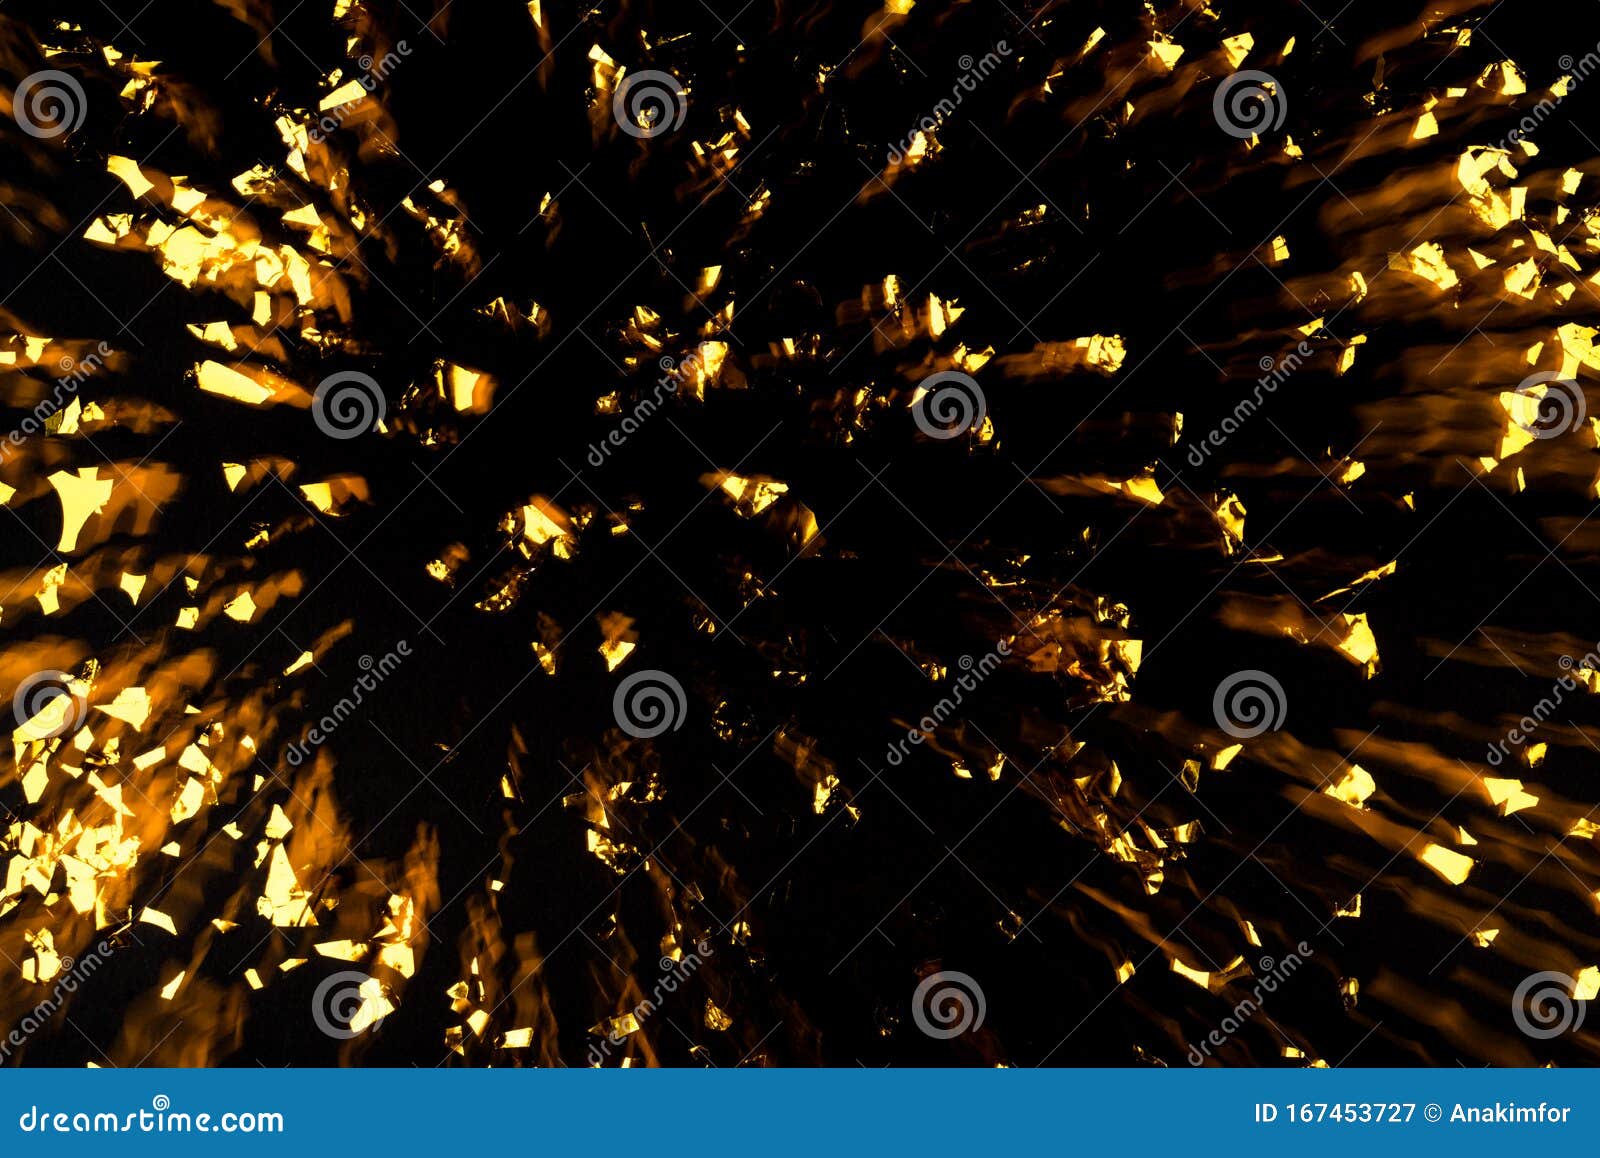 Goud Confetti Verplaatsen Op Zwarte Achtergrond Stock Afbeelding - Image Of  Explosie, Feestelijk: 167453727